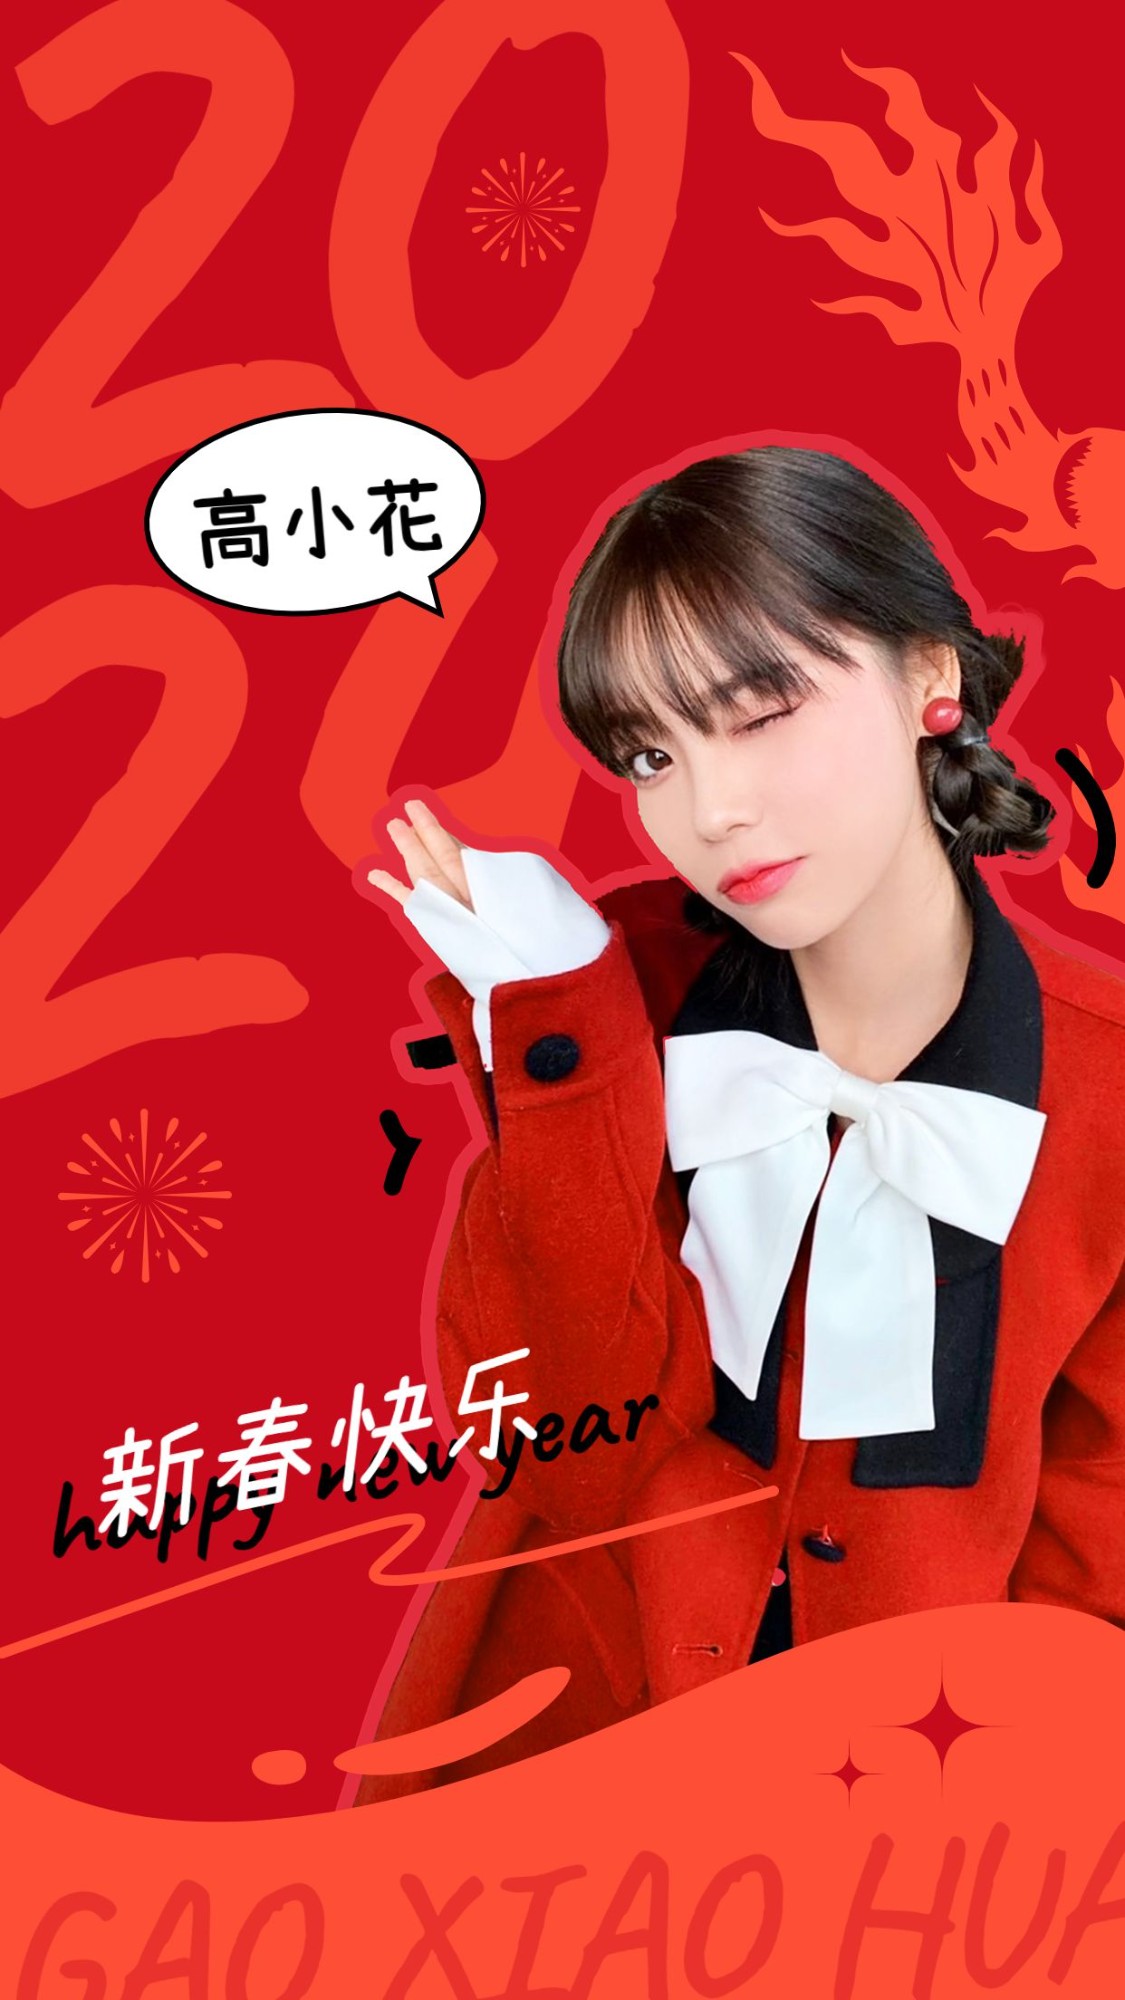 春节新年明星工作室祝福手机海报